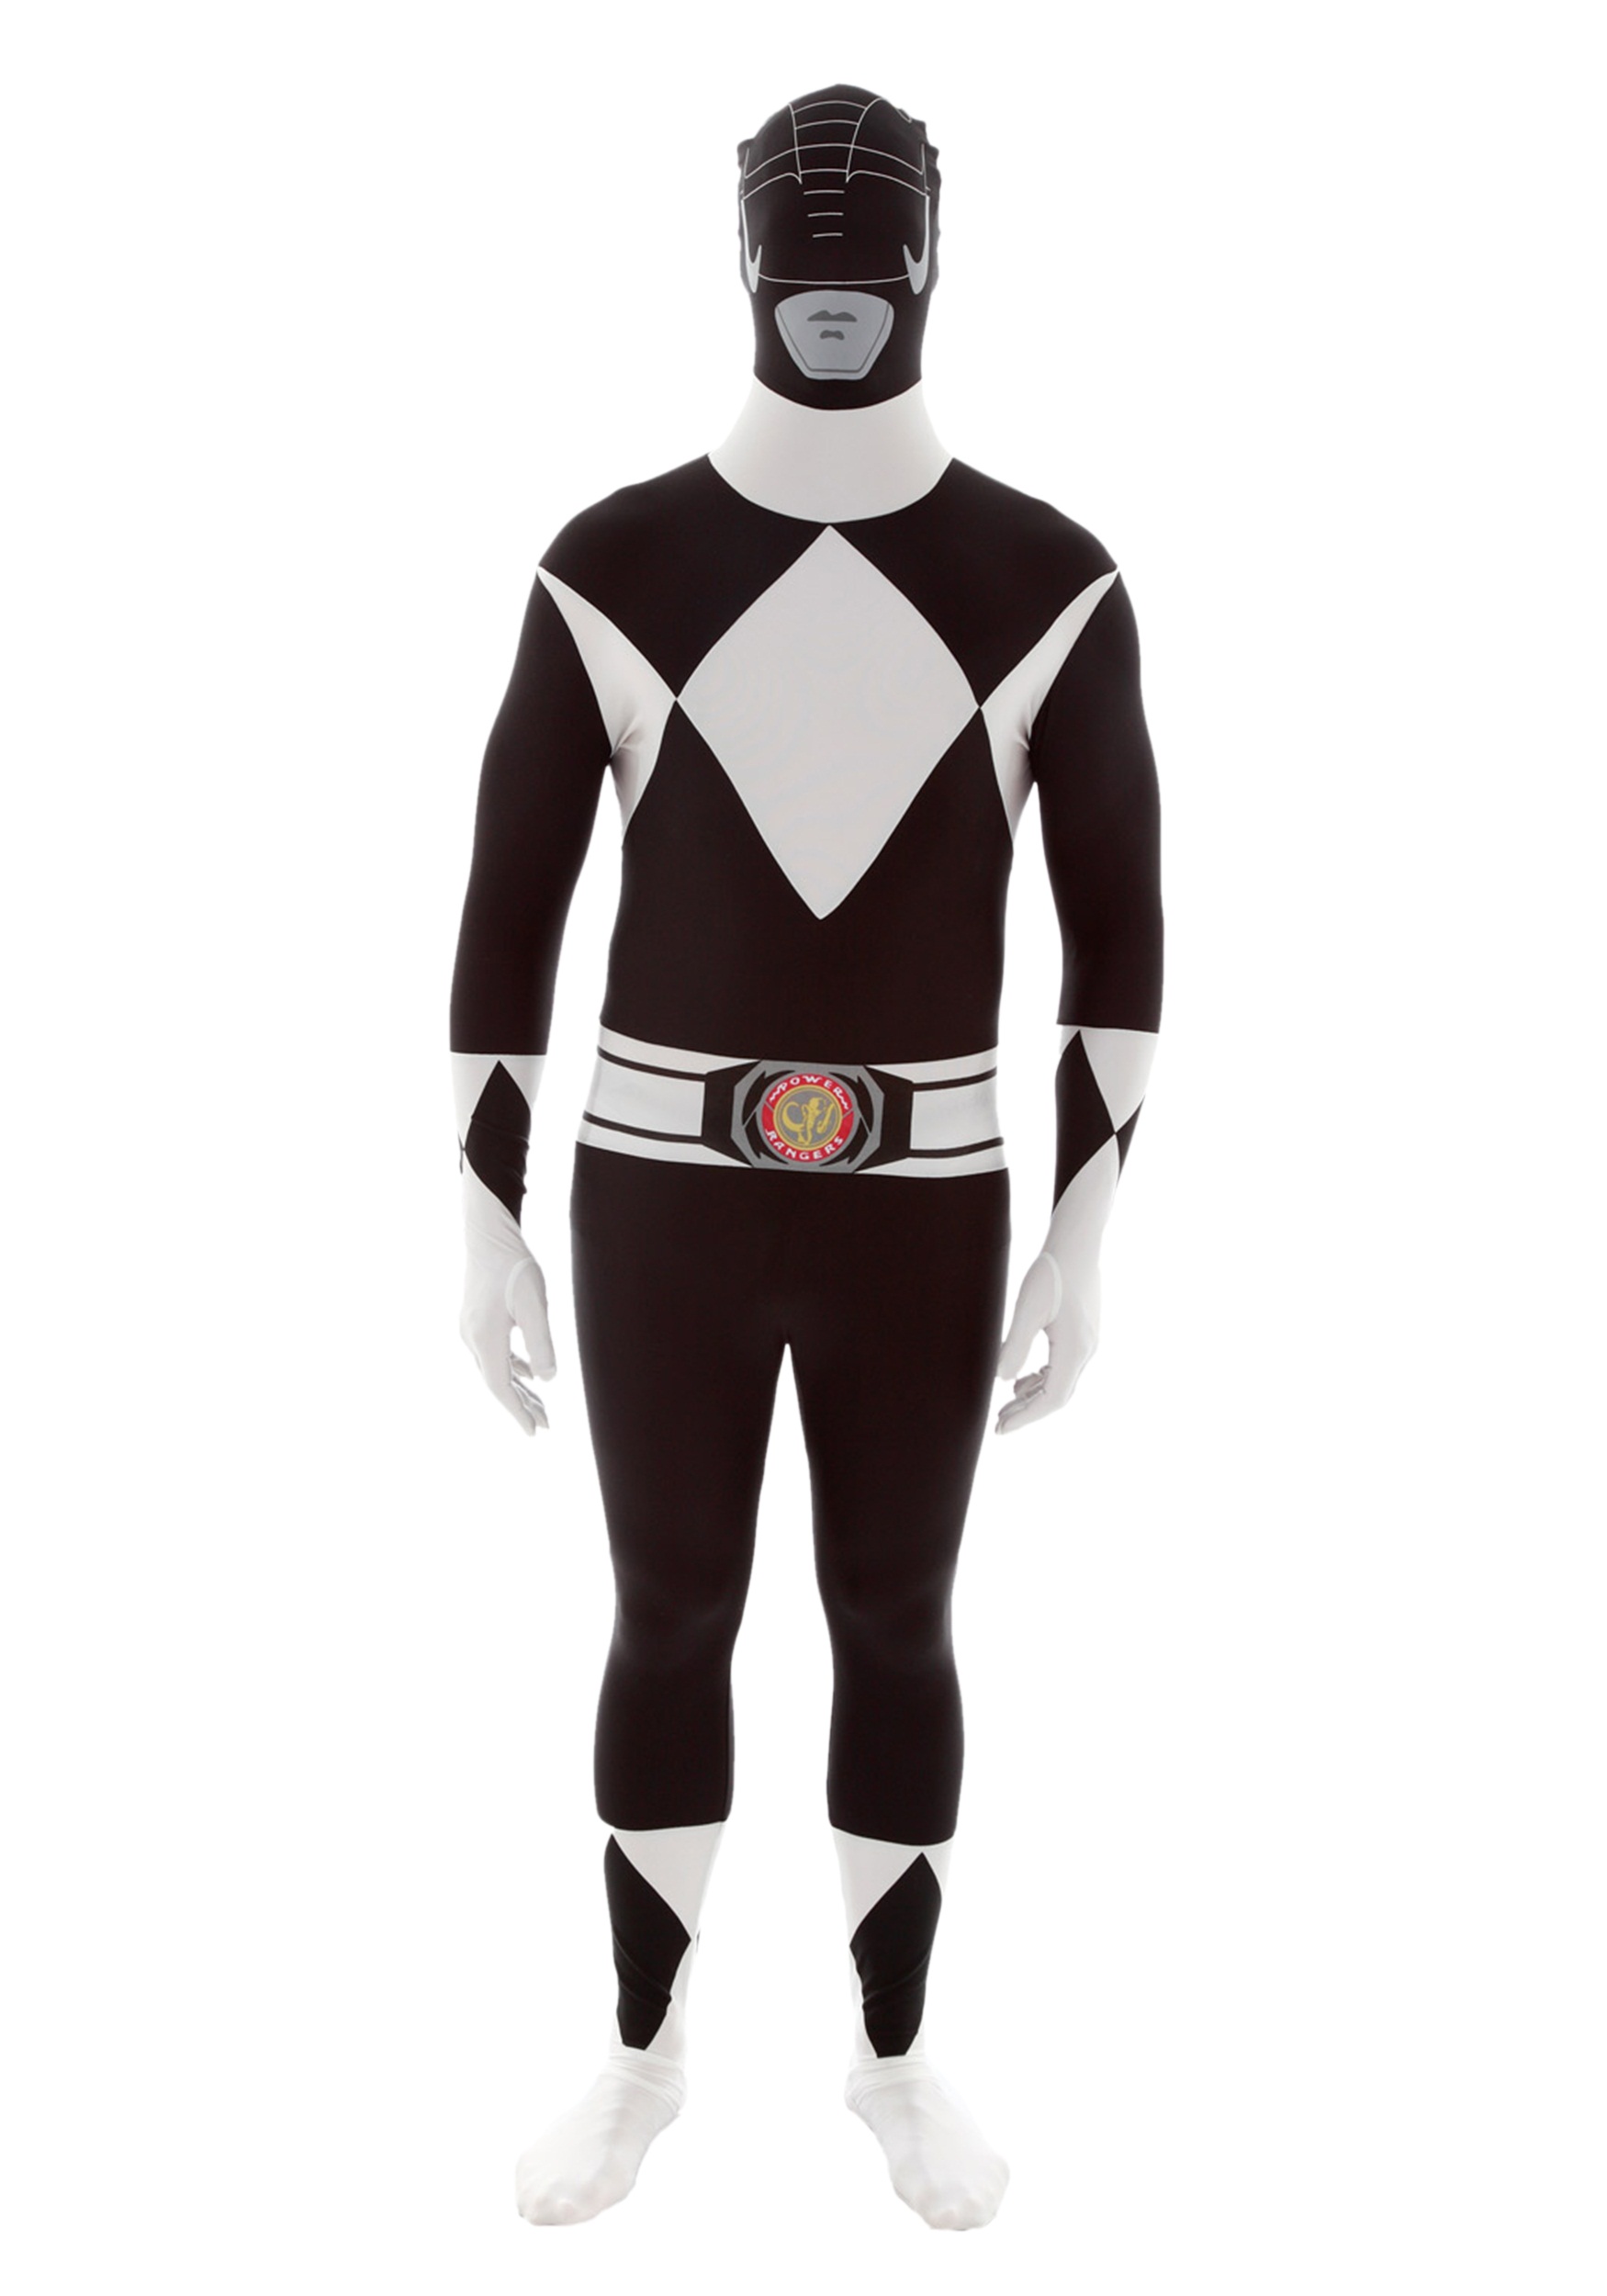 Photos - Fancy Dress Power Morphsuits  Rangers: Black Ranger Morphsuit  Costume Black 